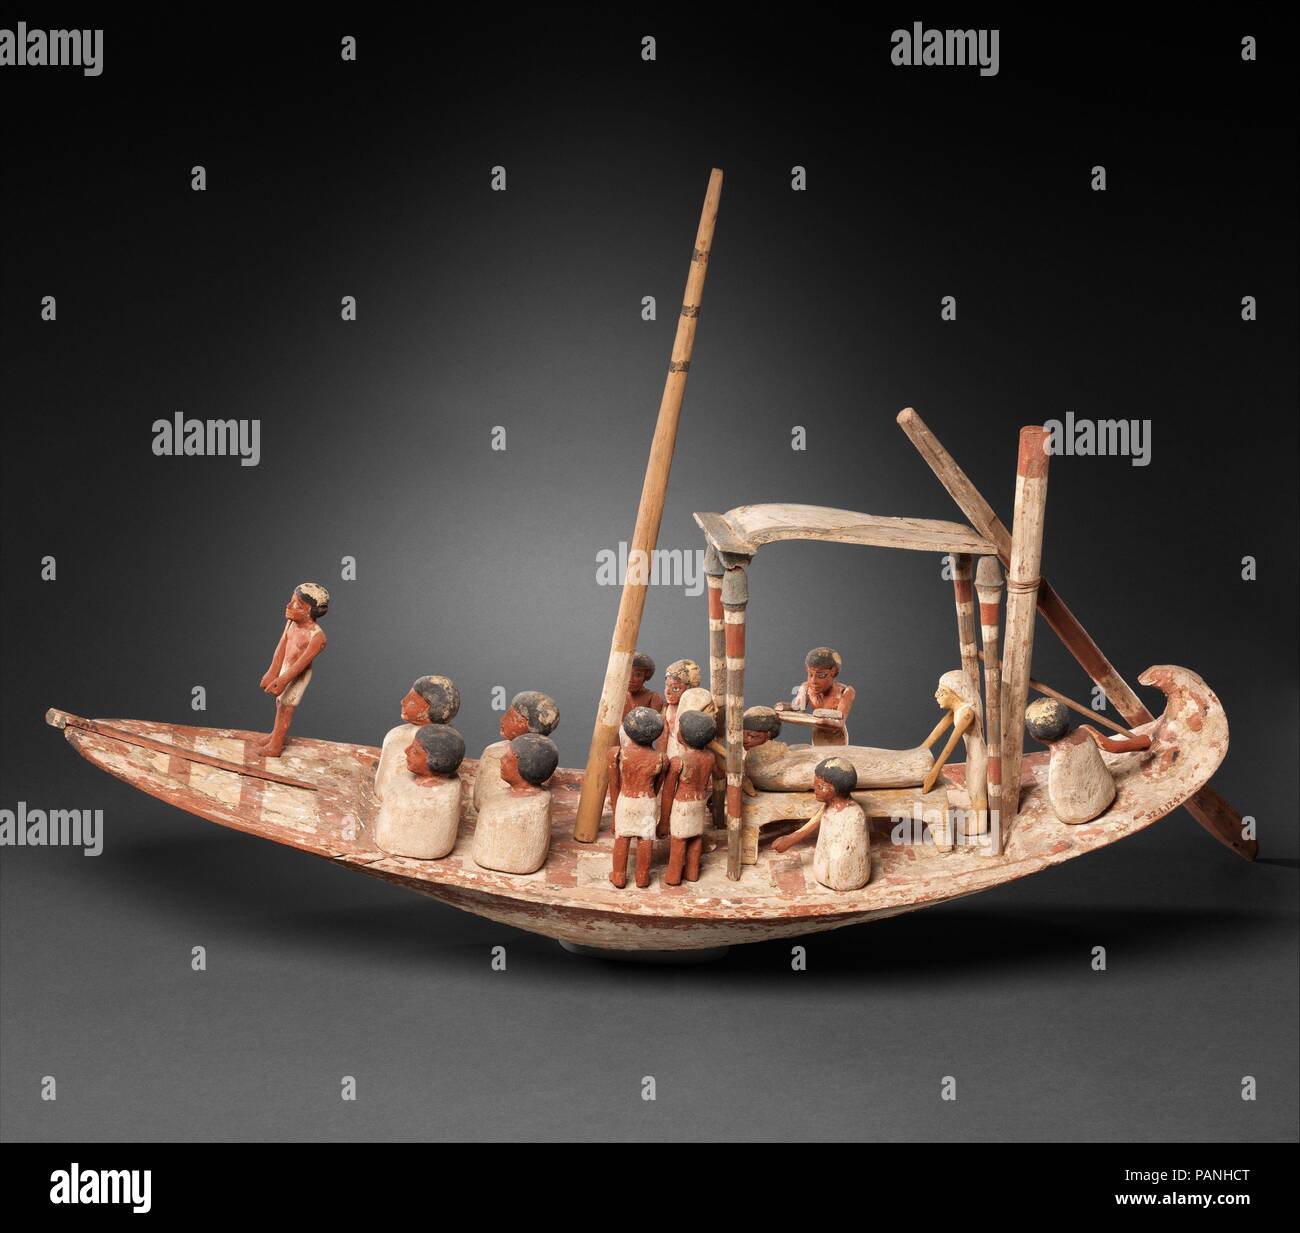 Modell Segelboot Transport einer Mumie. Abmessungen: L 80,6 cm (31 3/4 in.); W. 21,2 cm (8 3/8 in.); H. nach oben von Mast 54 cm (21 1/4 in.) Beam L. 23cm (9 1/16 in.). Dynastie: Dynasty 12. Herrschaft: Amenemhat II, Ende. Datum: Ca. 1900-1885 v. Chr.. Eine Gruppe von Matrosen von der Mast stehend Hebezeuge das Segel (nicht erhalten) für dieses Boot mit einer Mumie auf eine Bahre unter einem Baldachin. Die Mumie wird von zwei Frauen neigten - vielleicht verkörpern die Göttinnen Isis und Nephthys - während ein Priester aus einer Papyrusrolle liest. Vier Männer sitzen Hockte vor dem Mast und Baldachin. Ihre Körperhaltung ist vergleichbar mit der Stockfoto